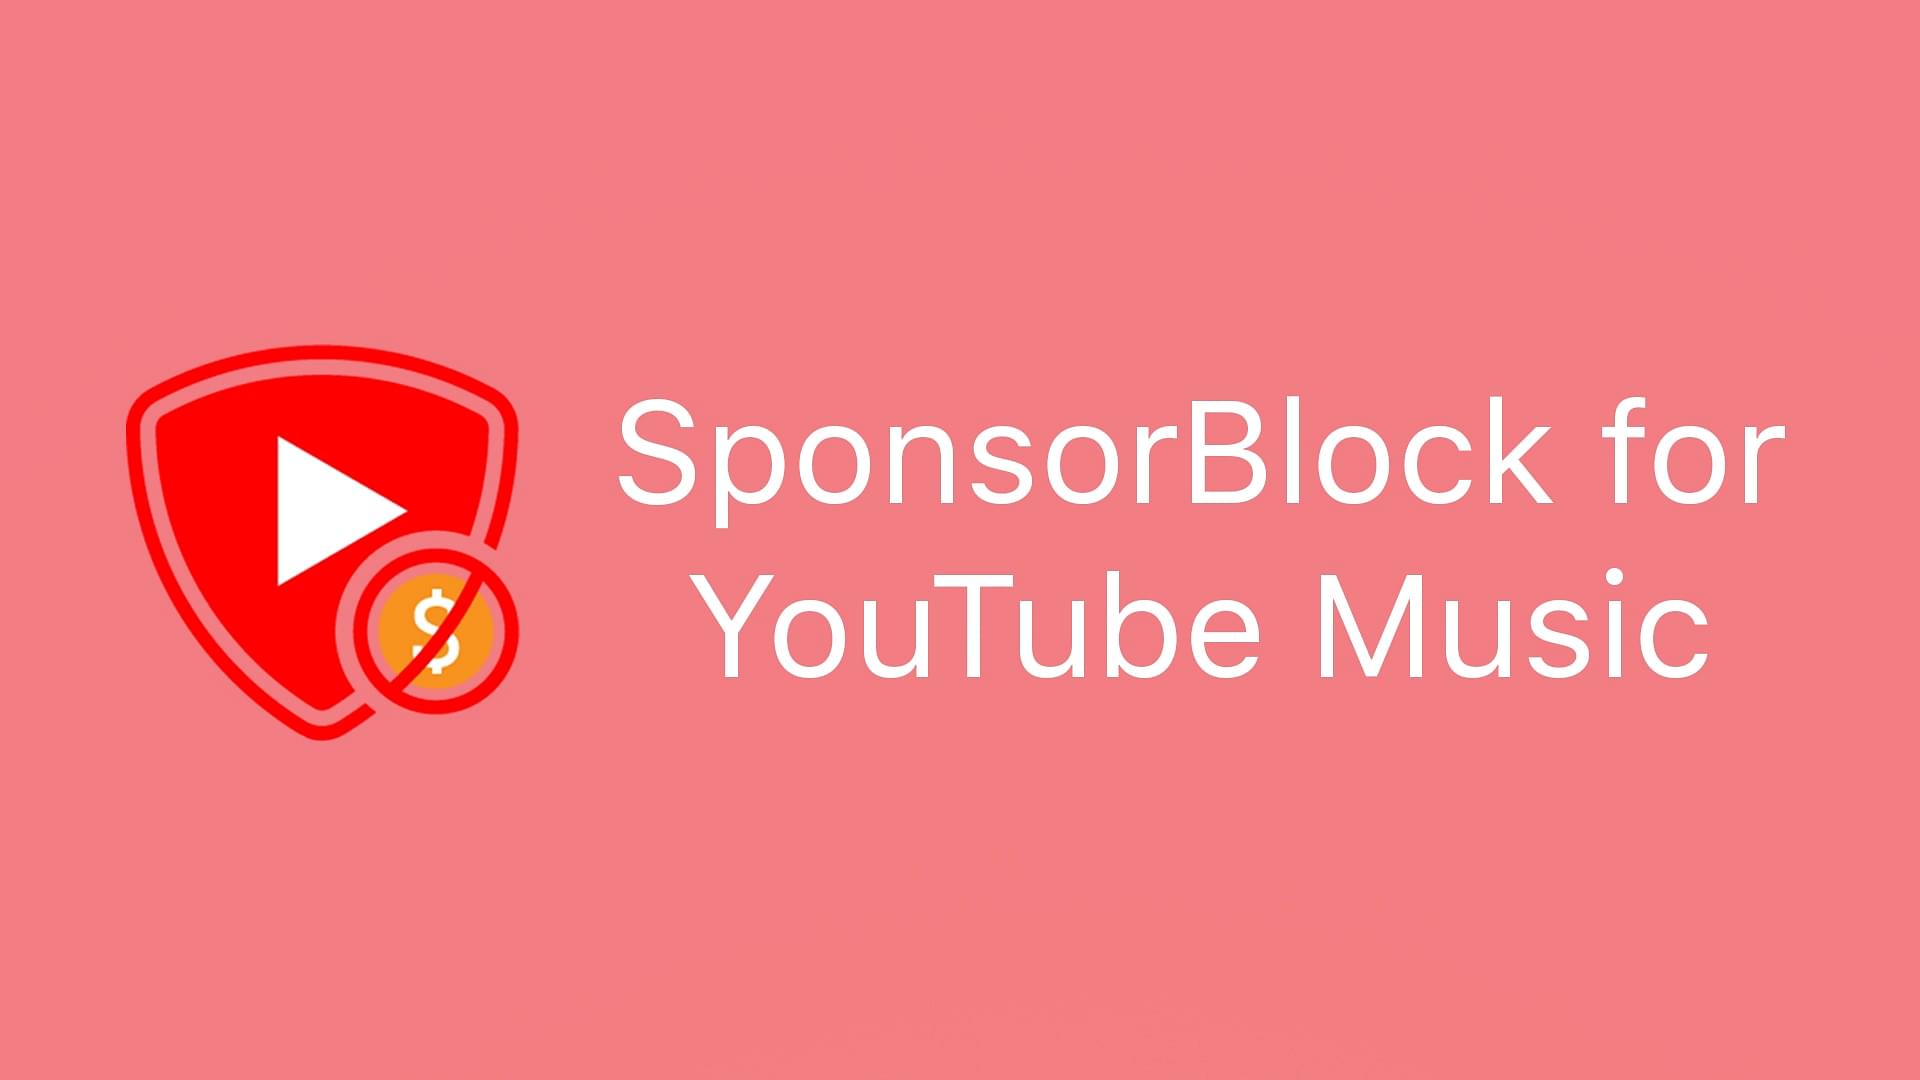 Sponsorblock for YouTube Music